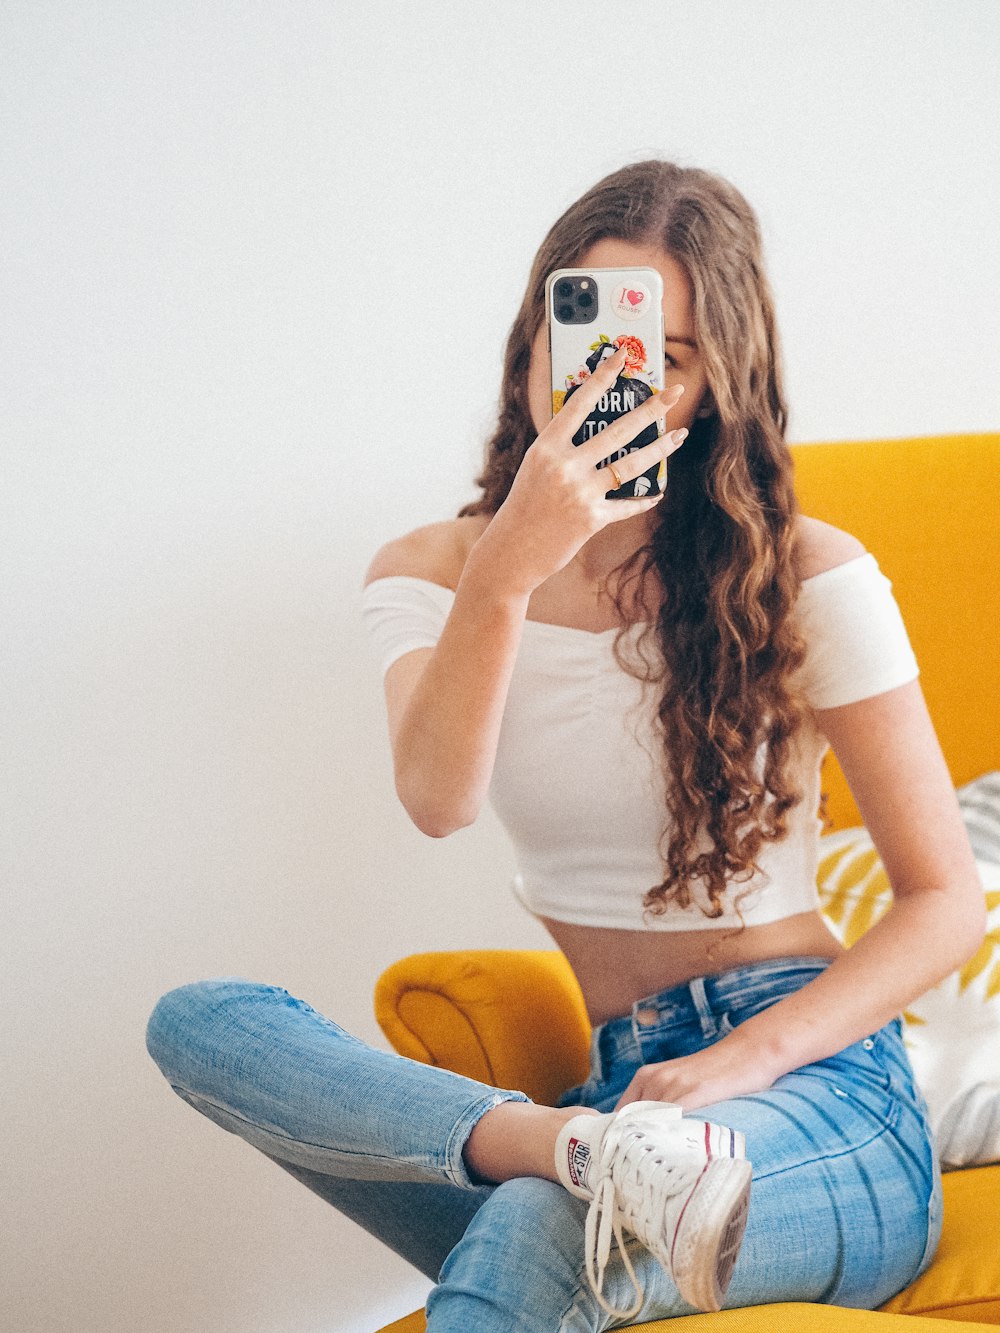 Pics ⭐ selfie girl Ultimate Amateur